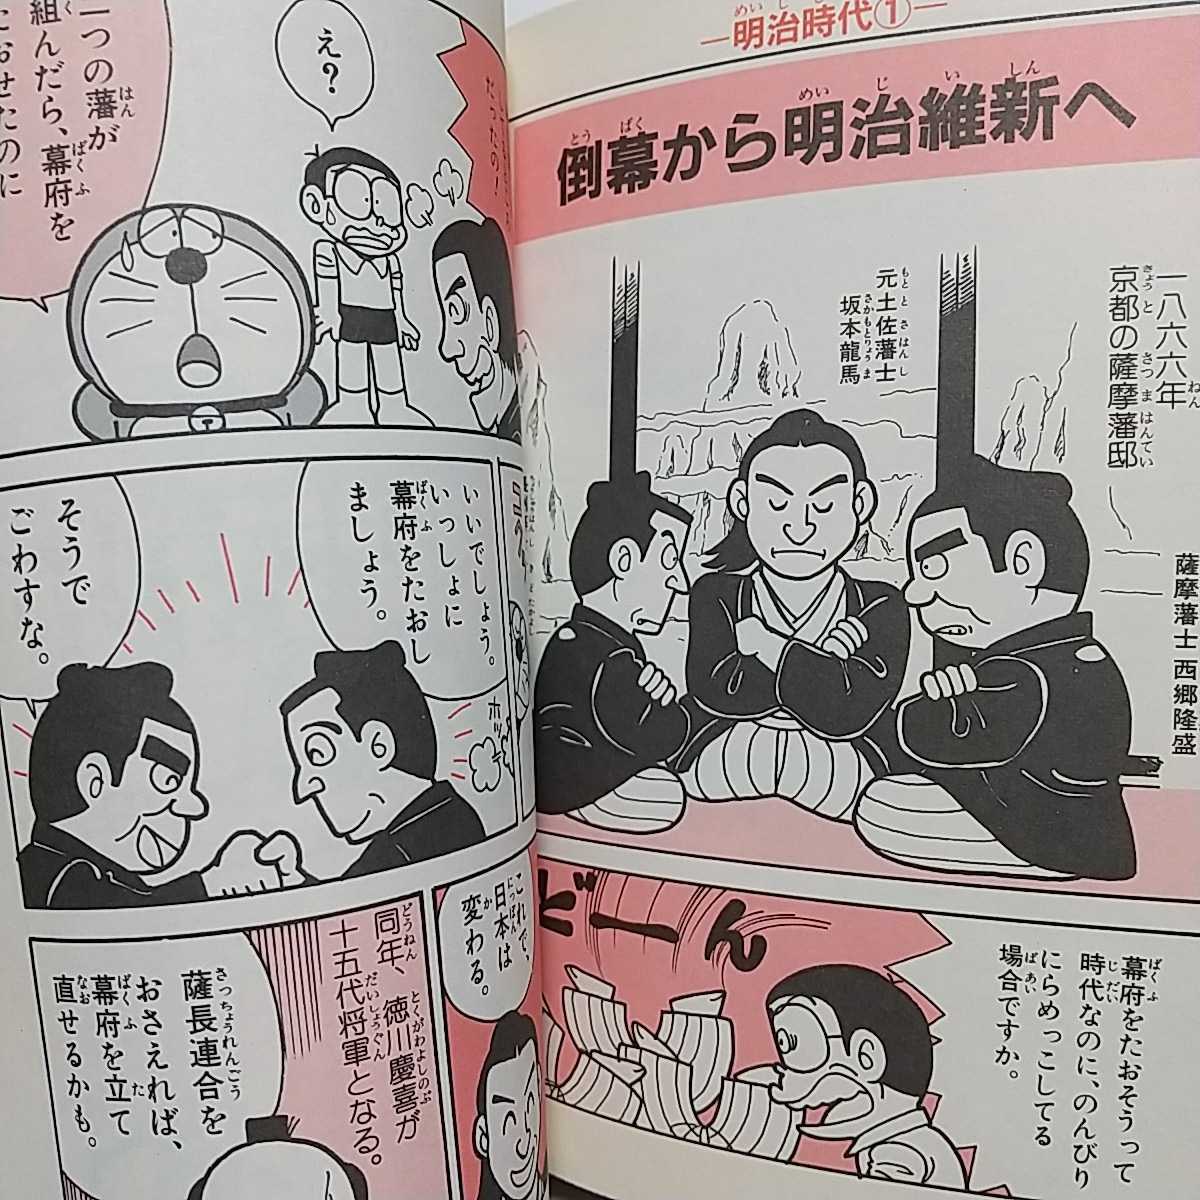 2冊セット ドラえもんの社会科おもしろ攻略 日本の歴史がわかる1 2 戦国時代 平成時代 初版 ドラえもんの 学習シリーズ 学習漫画 売買されたオークション情報 Yahooの商品情報をアーカイブ公開 オークファン Aucfan Com